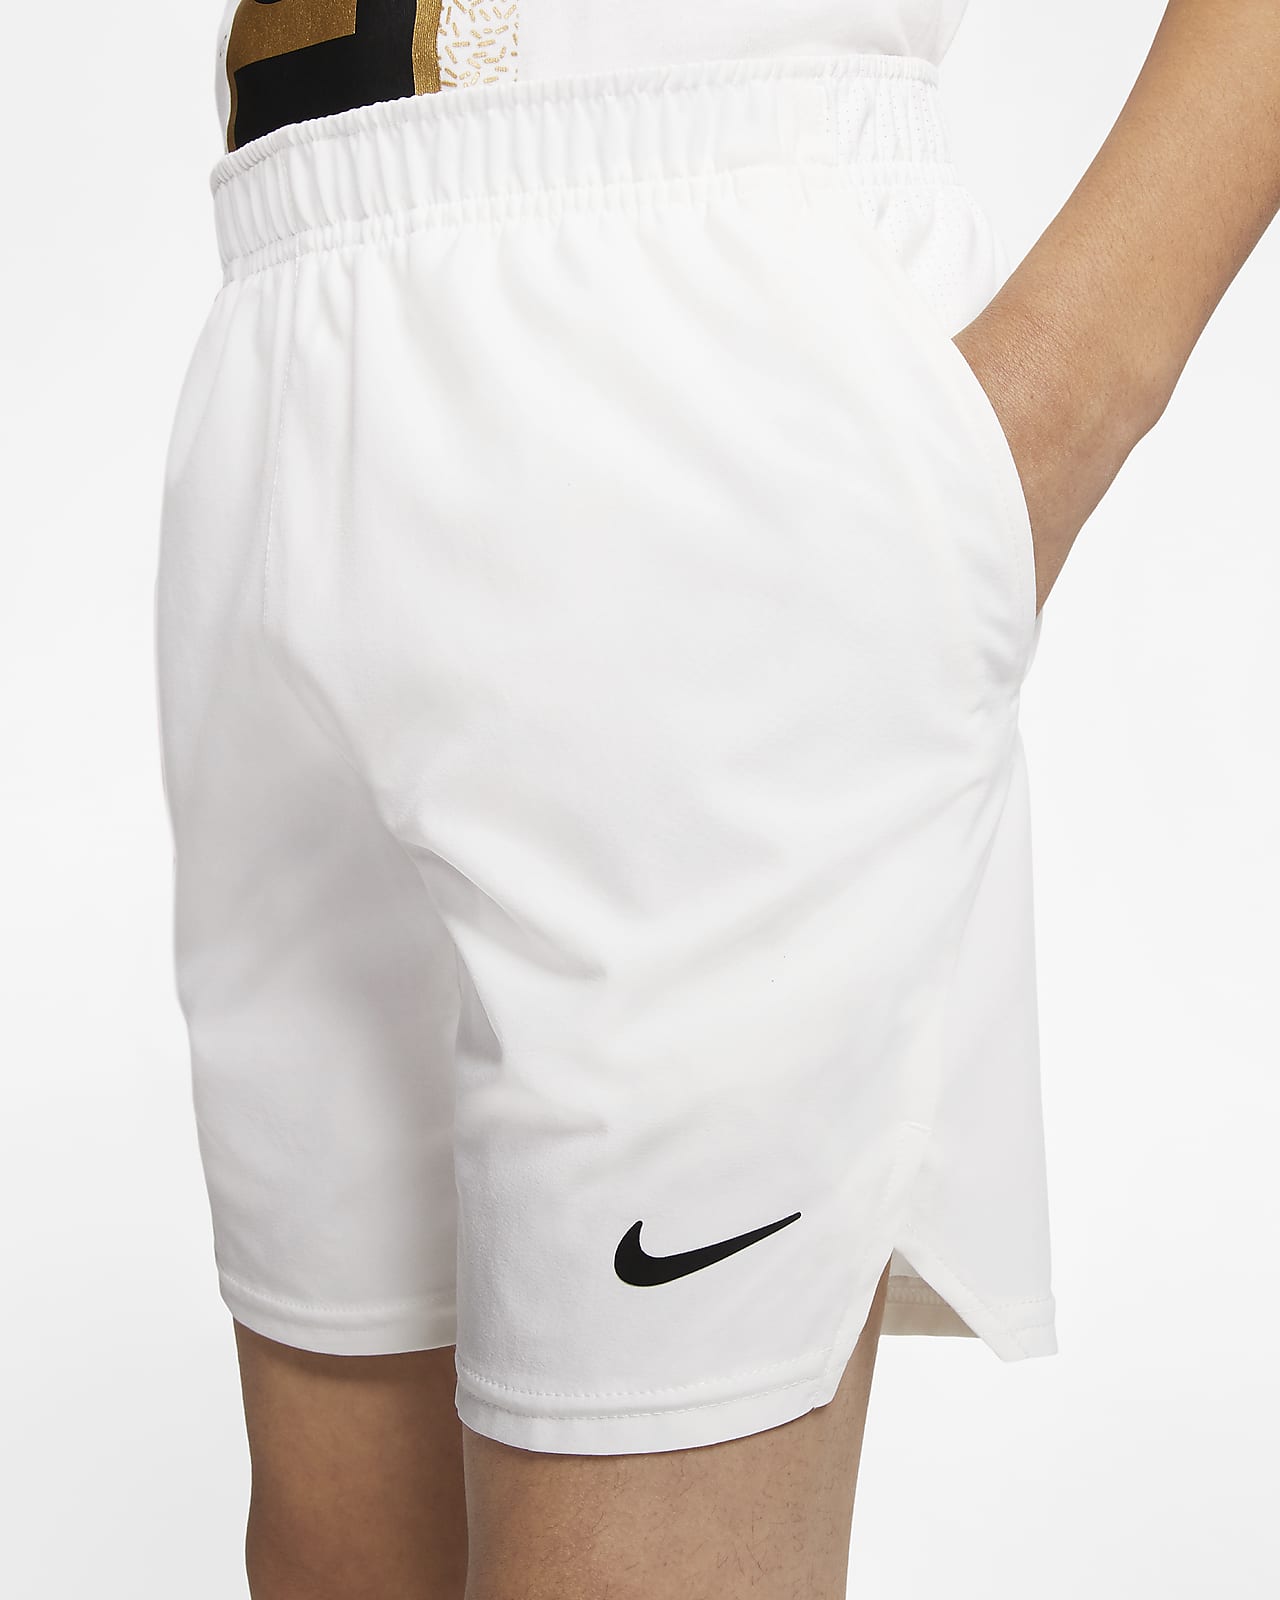 Shorts de para niño grande NikeCourt Flex Nike.com